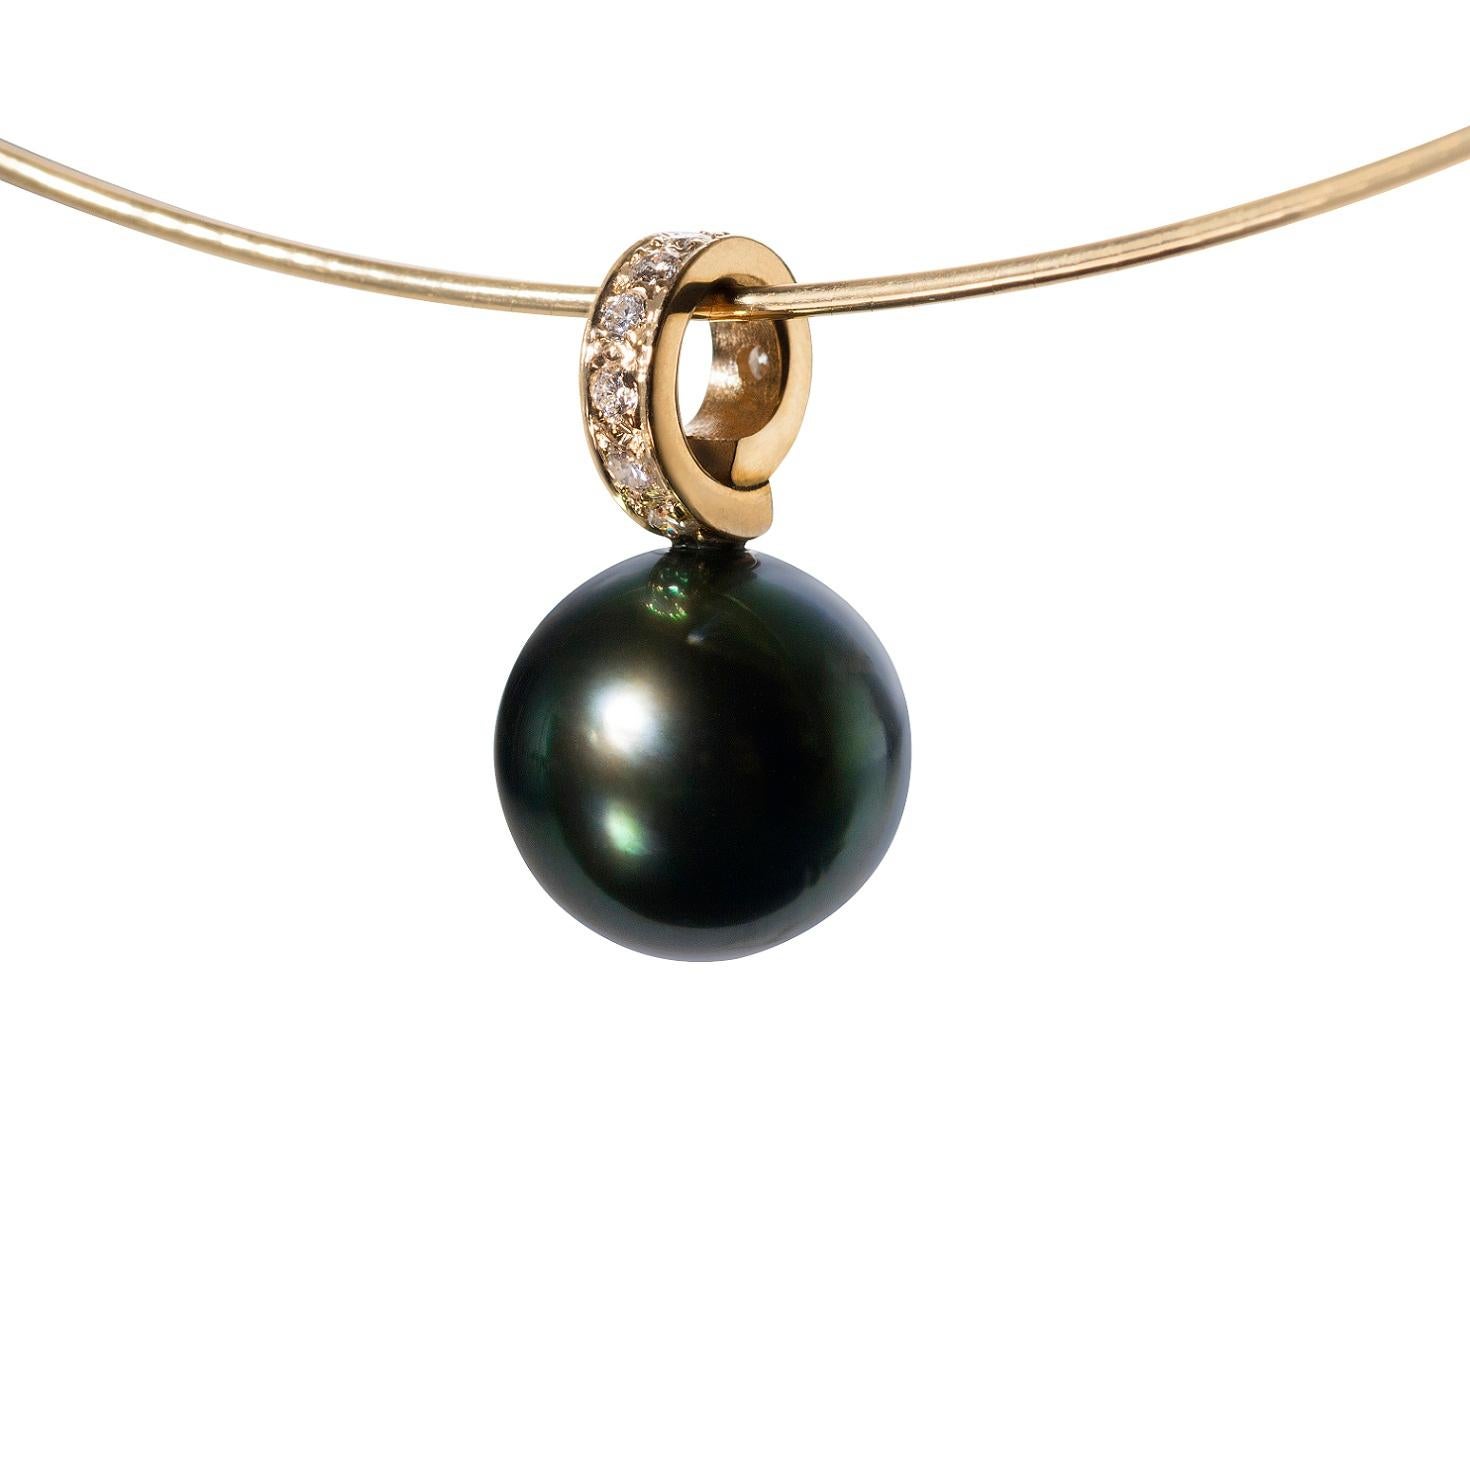 Pour les amoureux des perles, ce pendentif en perles de Tahiti Cirrus vous fera tomber en pâmoison. La perle mesure plus de 11,5 mm et présente les magnifiques nuances irisées de vert, de rose et d'or qui font la réputation des perles de Tahiti les